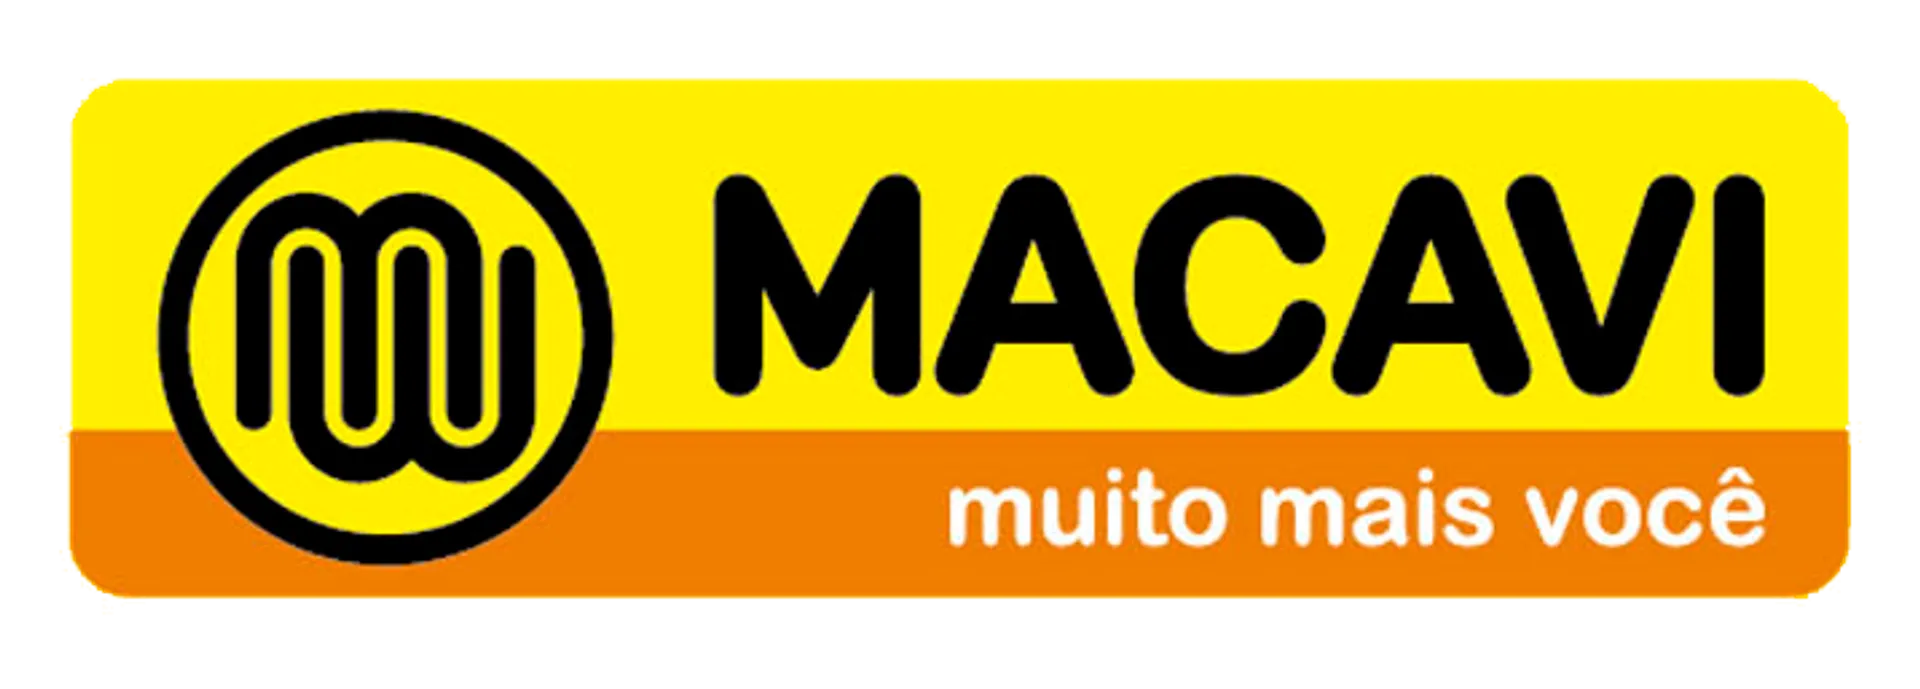 MACAVI logo de catálogo